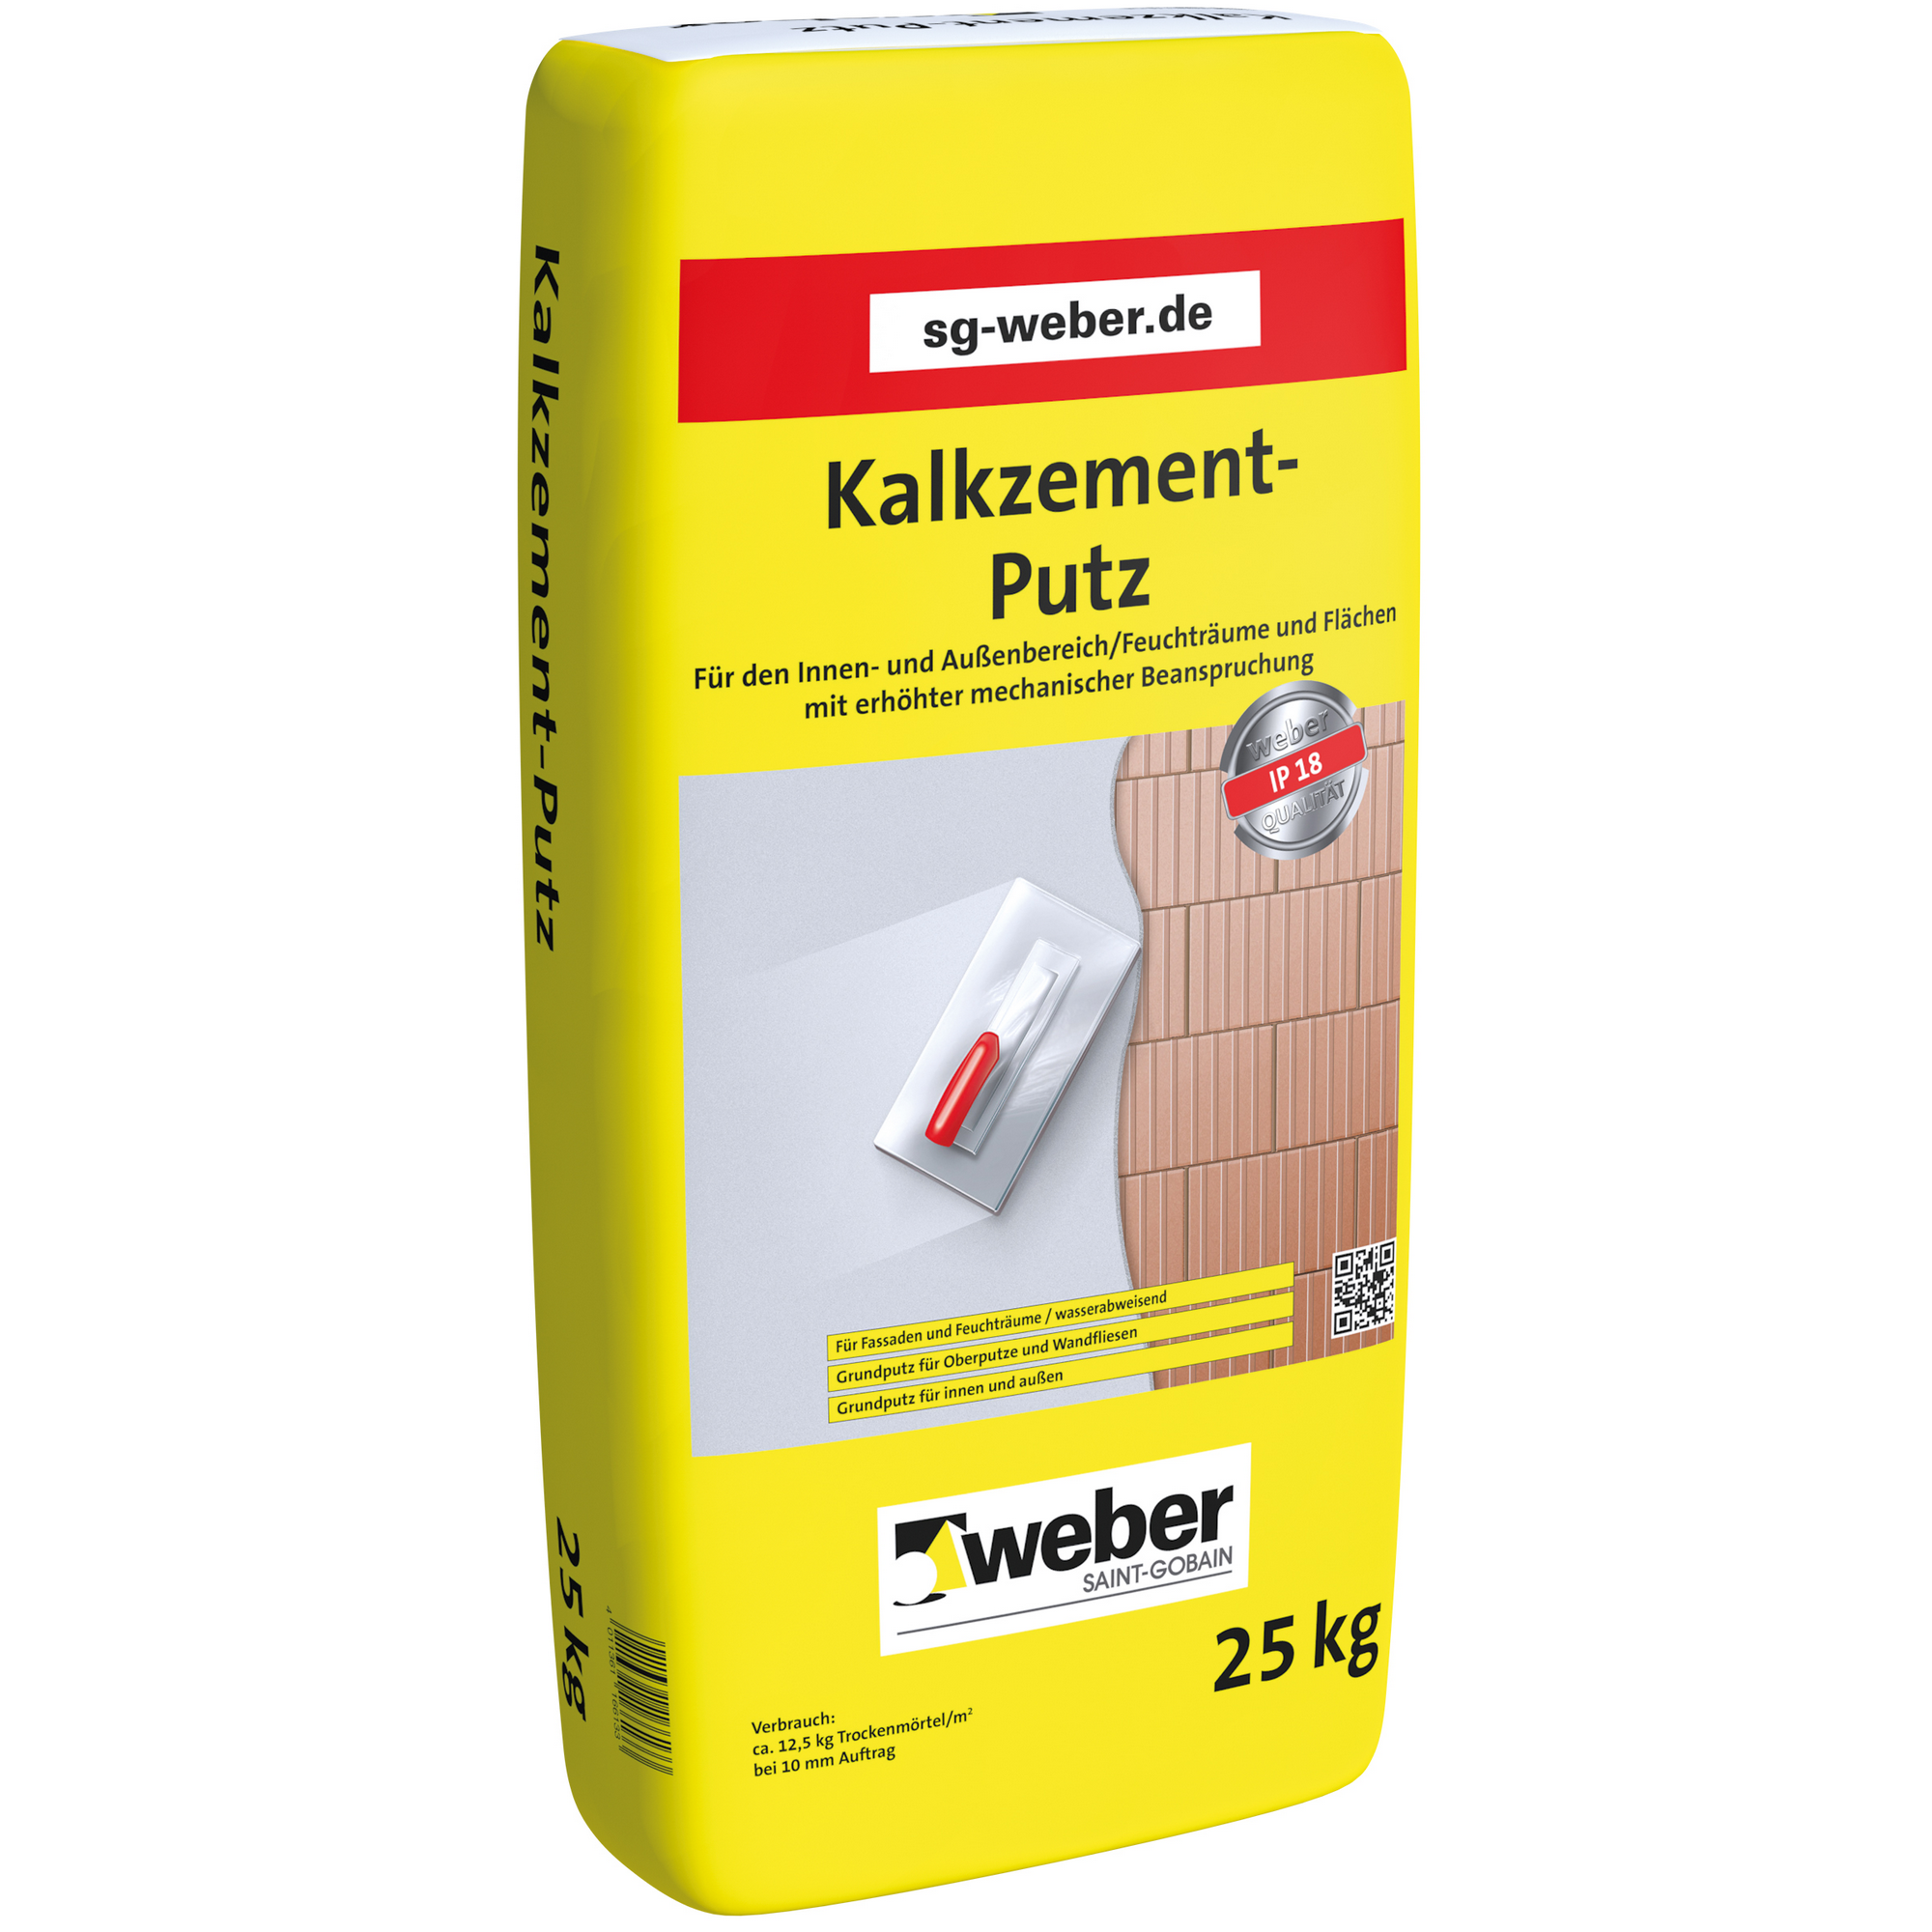 Kalkzement-Putz 25 kg + product picture